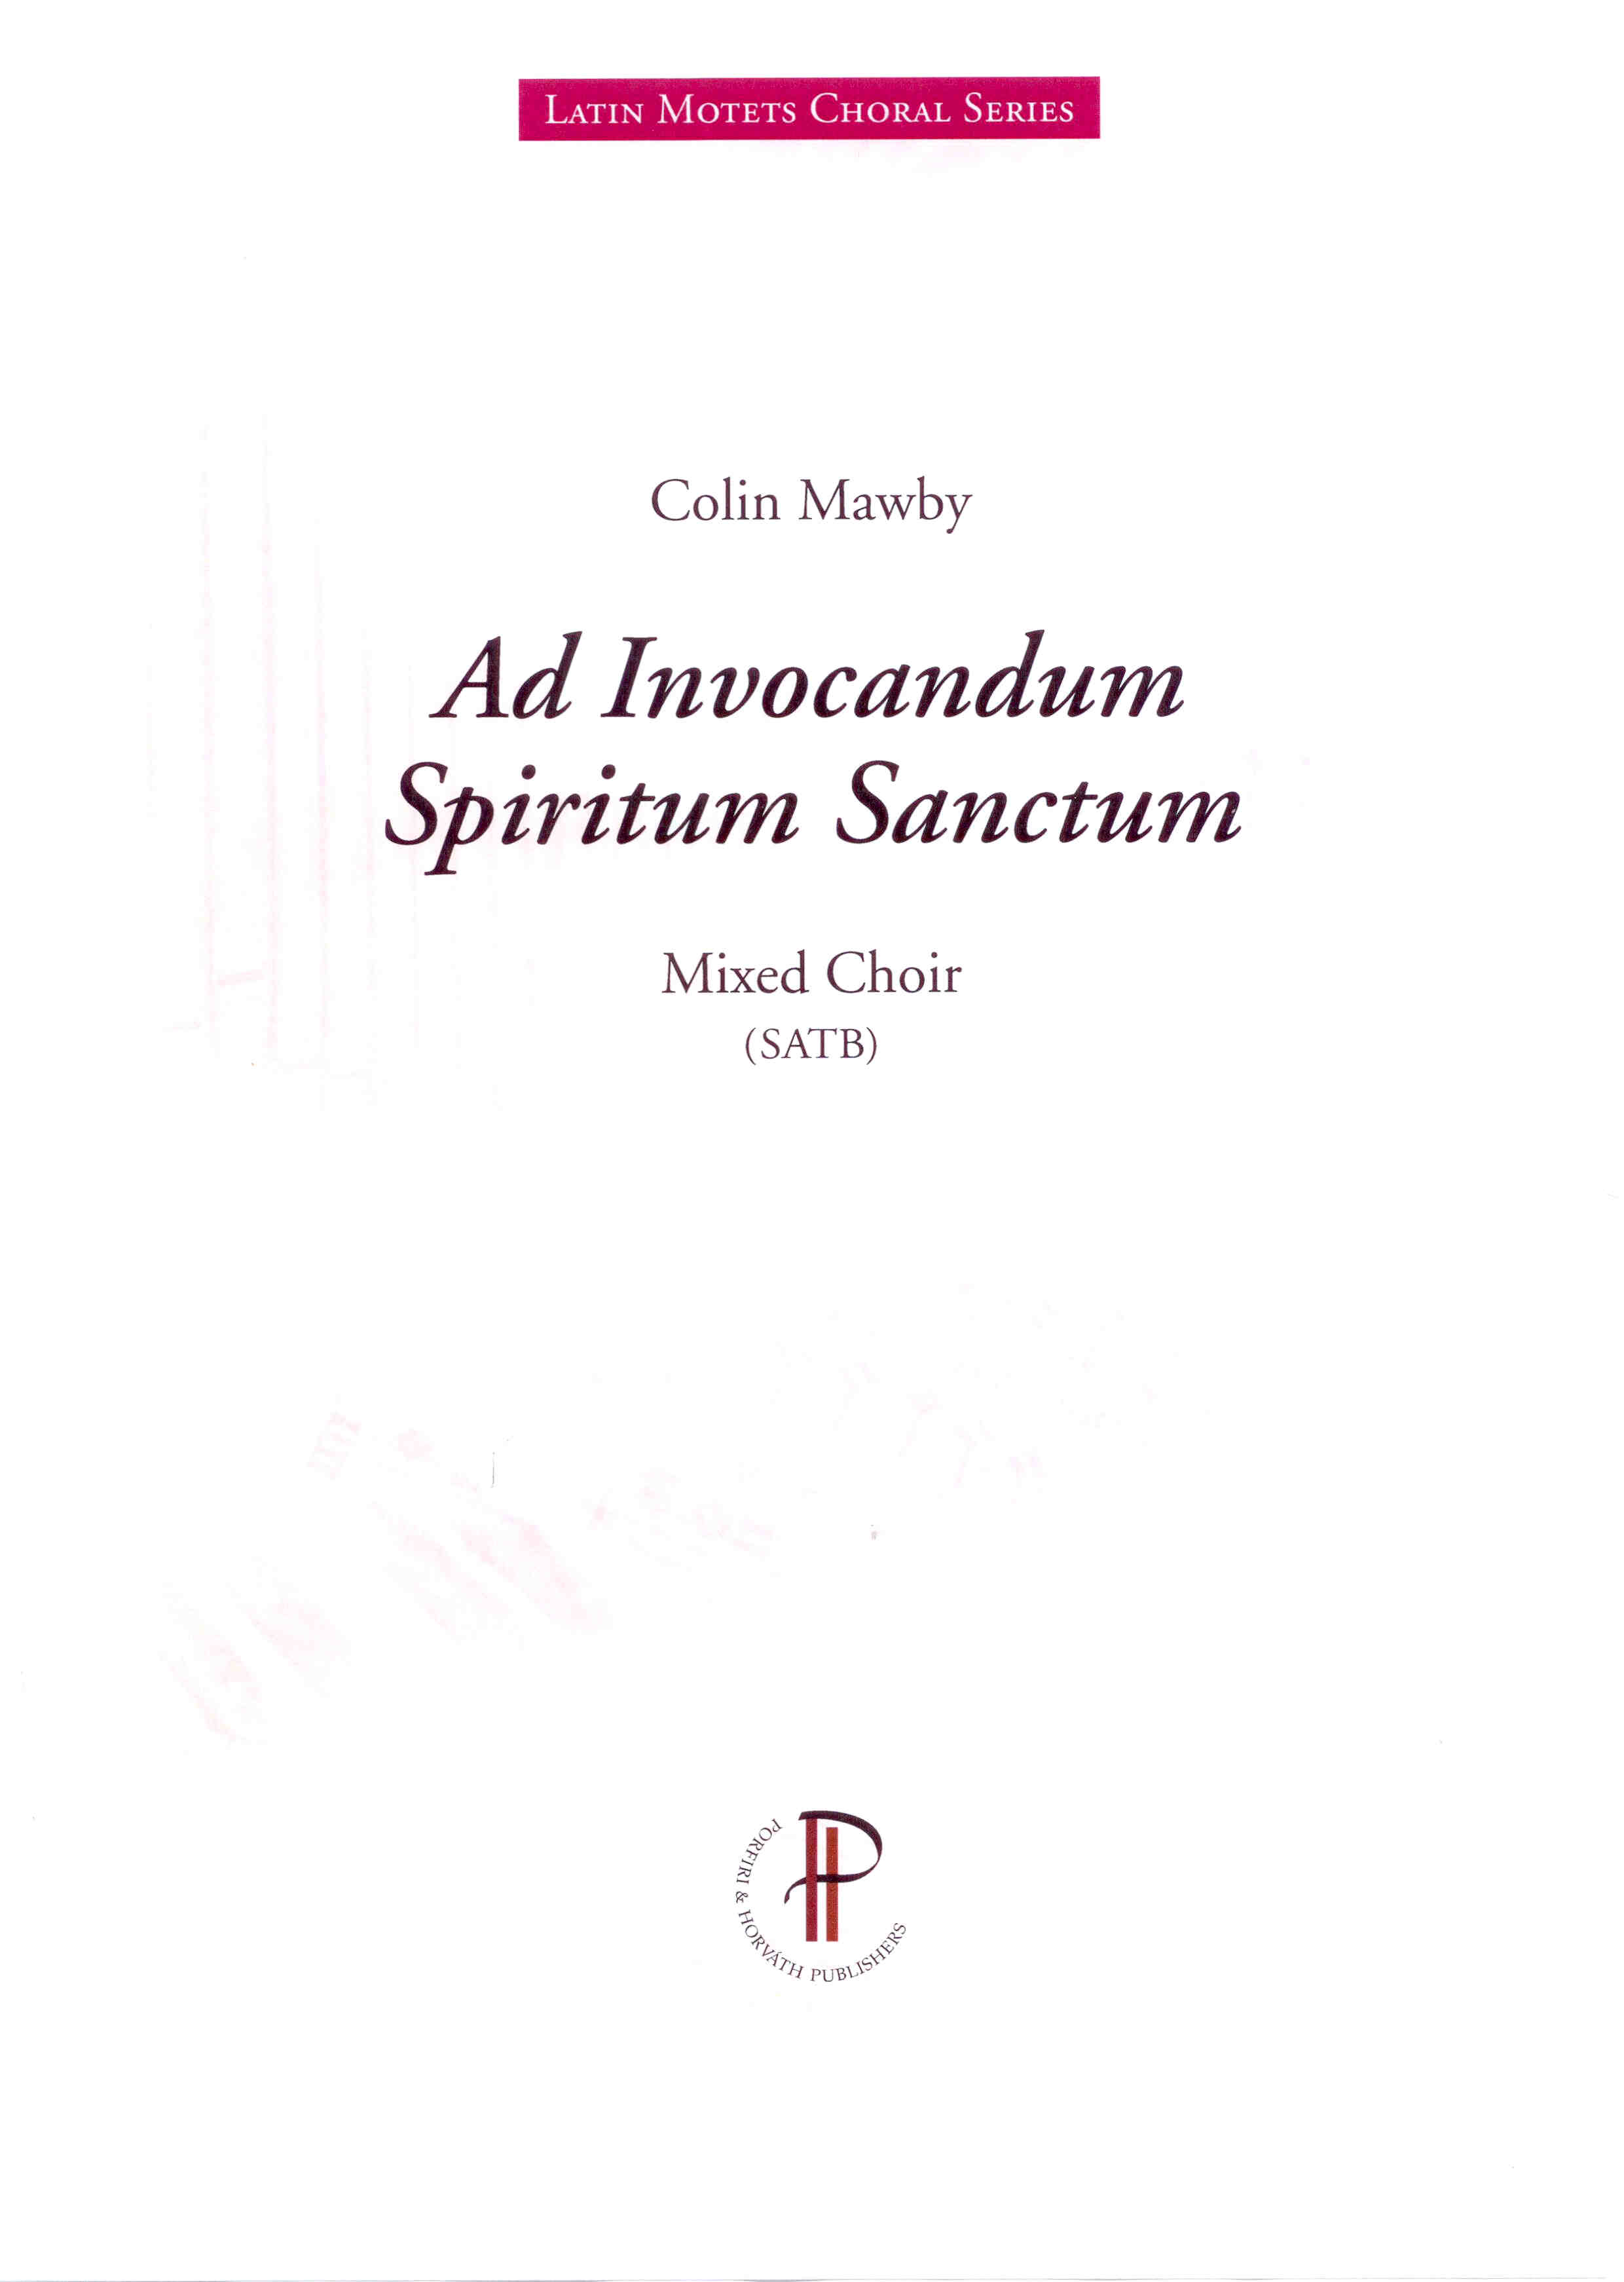 Ad Invocandum Spiritum Sanctum - Show sample score